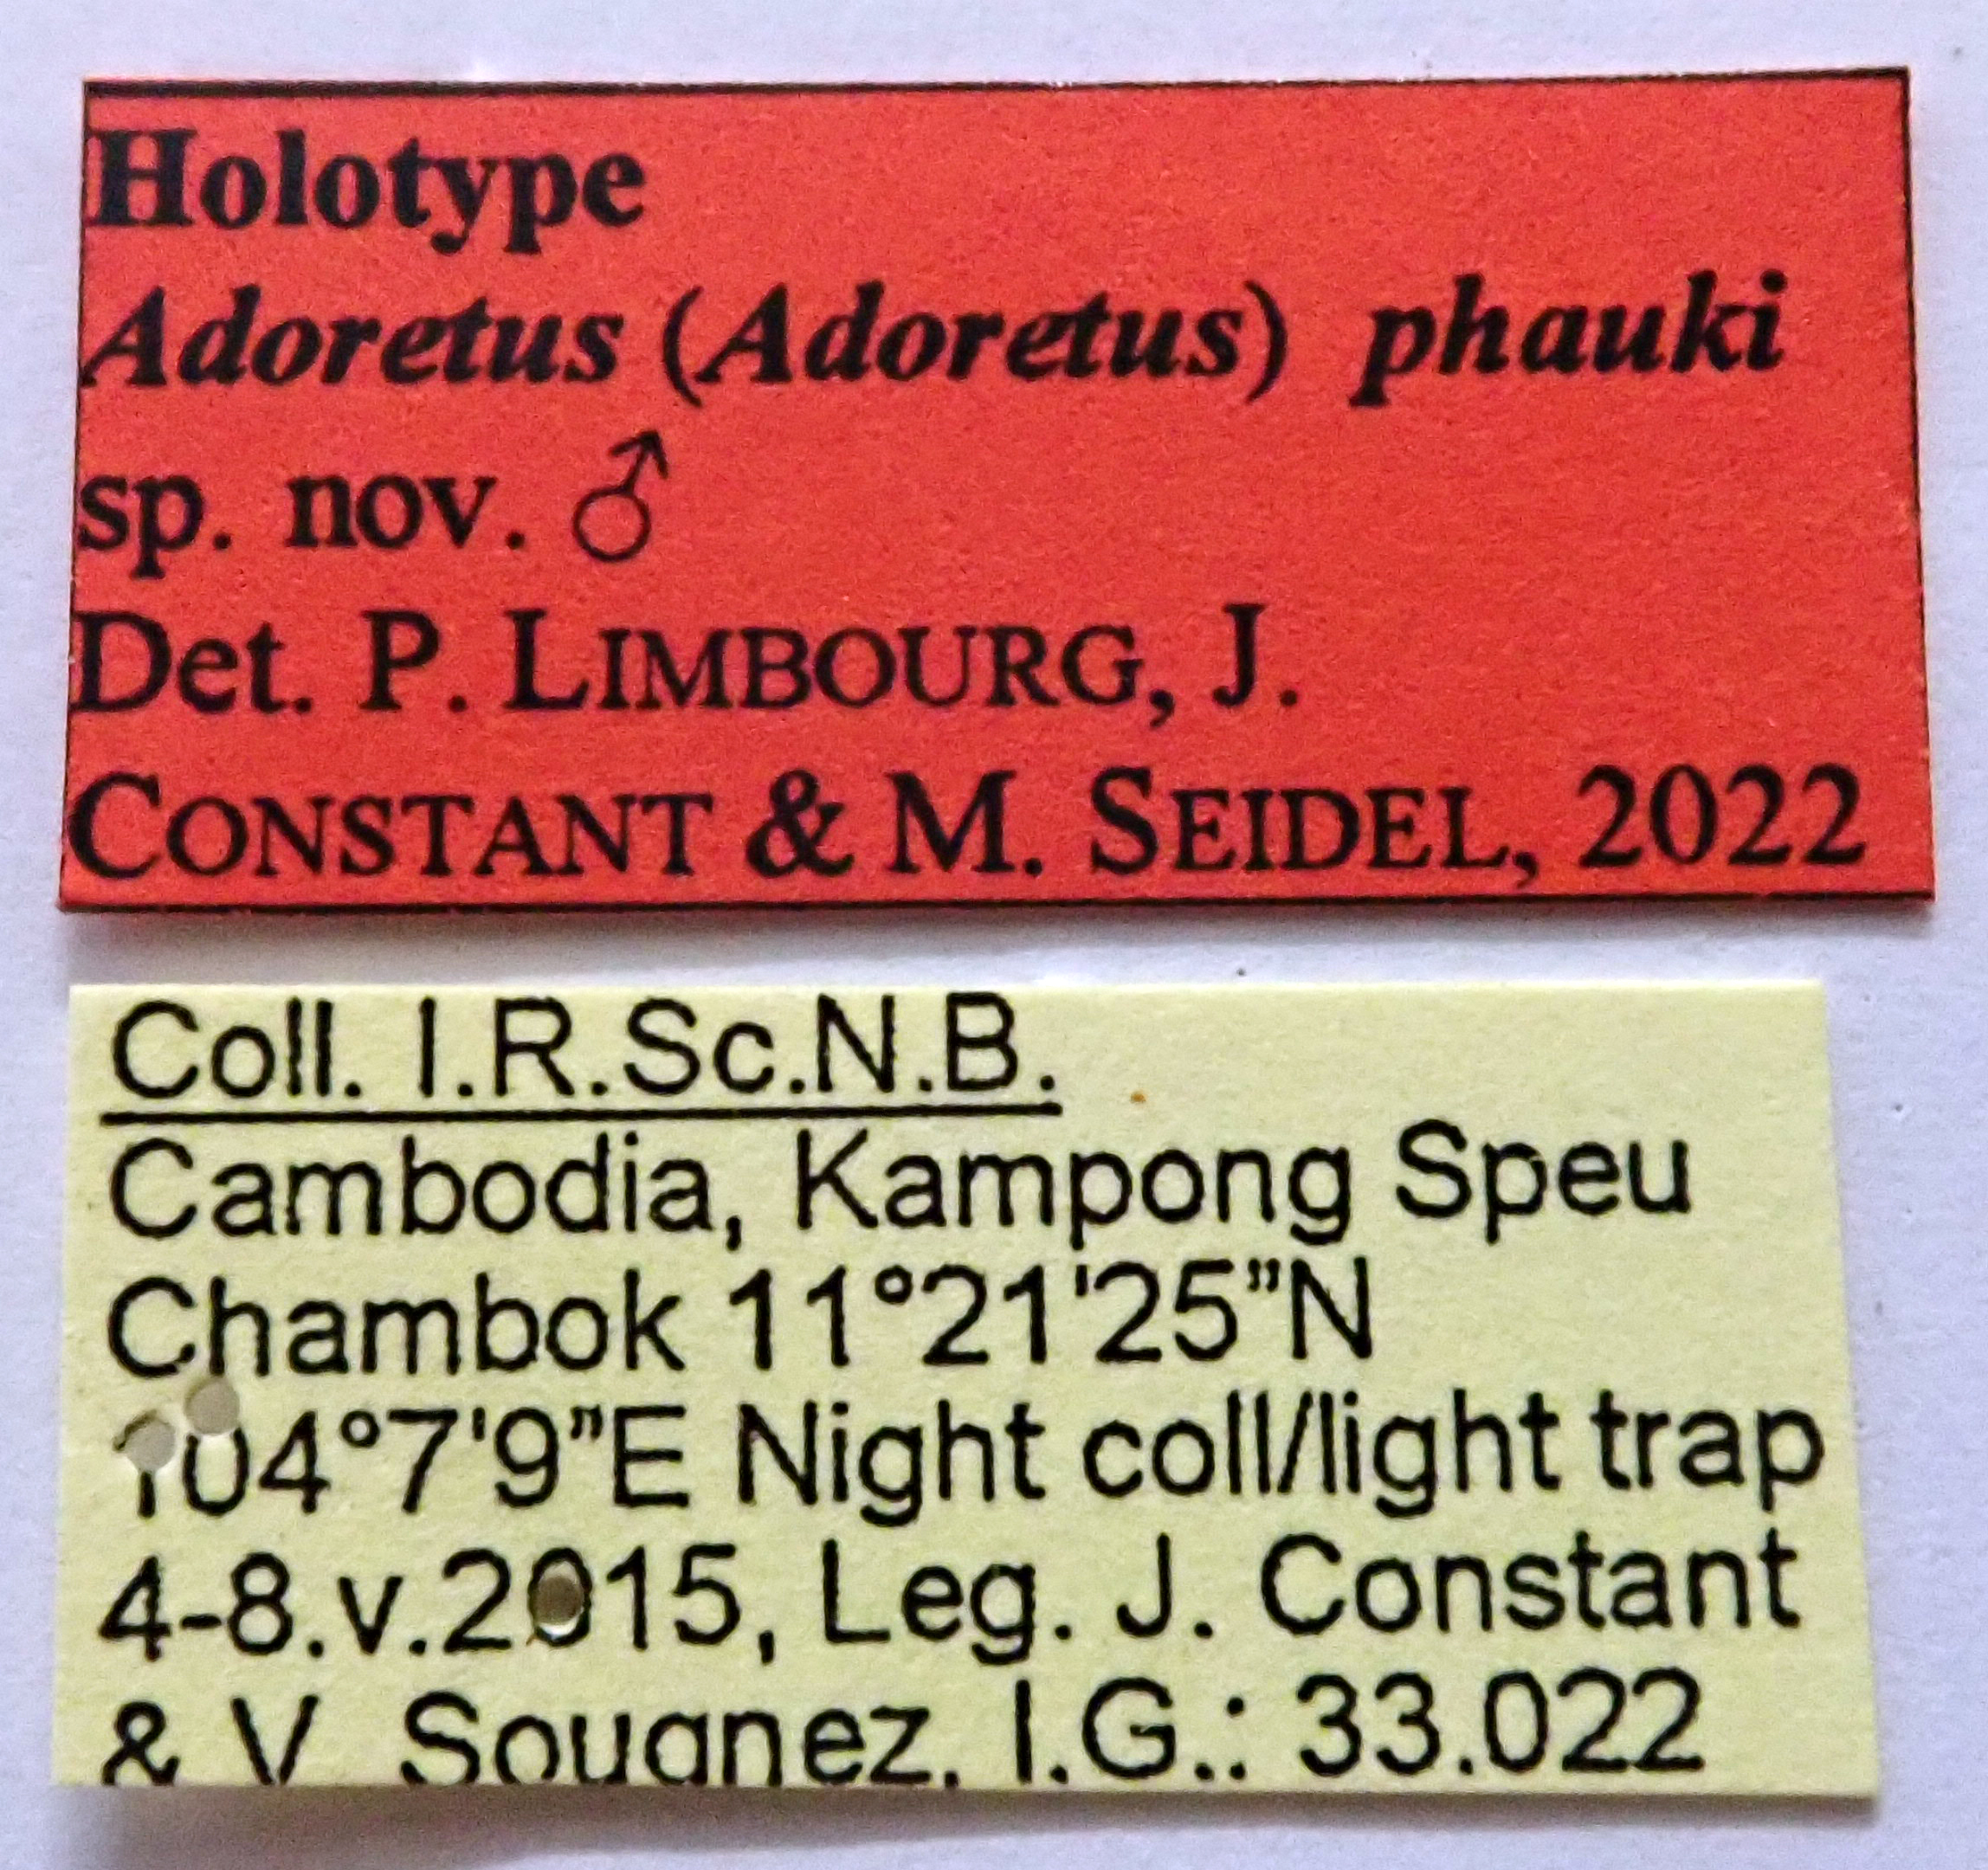 Adoretus (Adoretus) phauki Ht labels